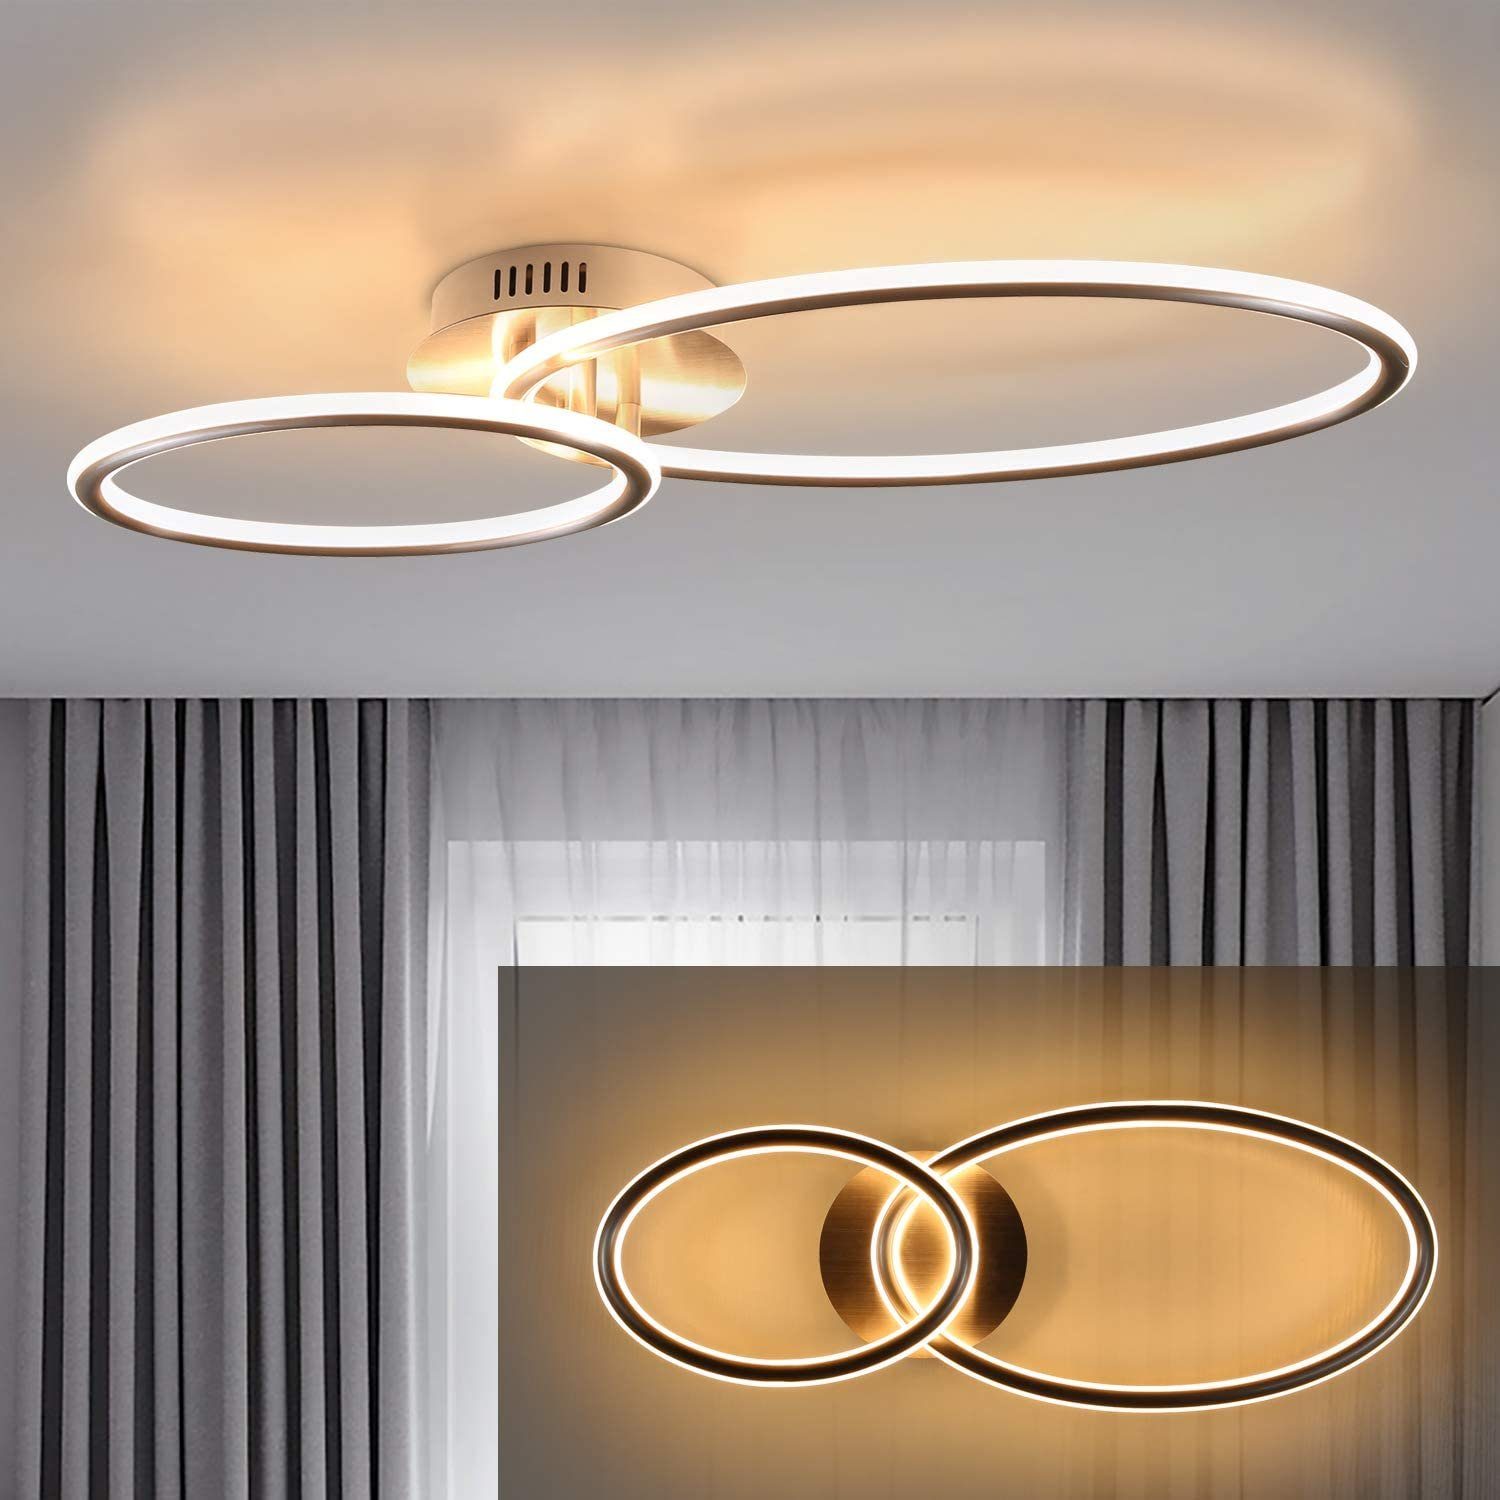 LED 68W Modern Deckenlampe Wohnzimmer Deckenleuchte Voll Dimmbar 6810 